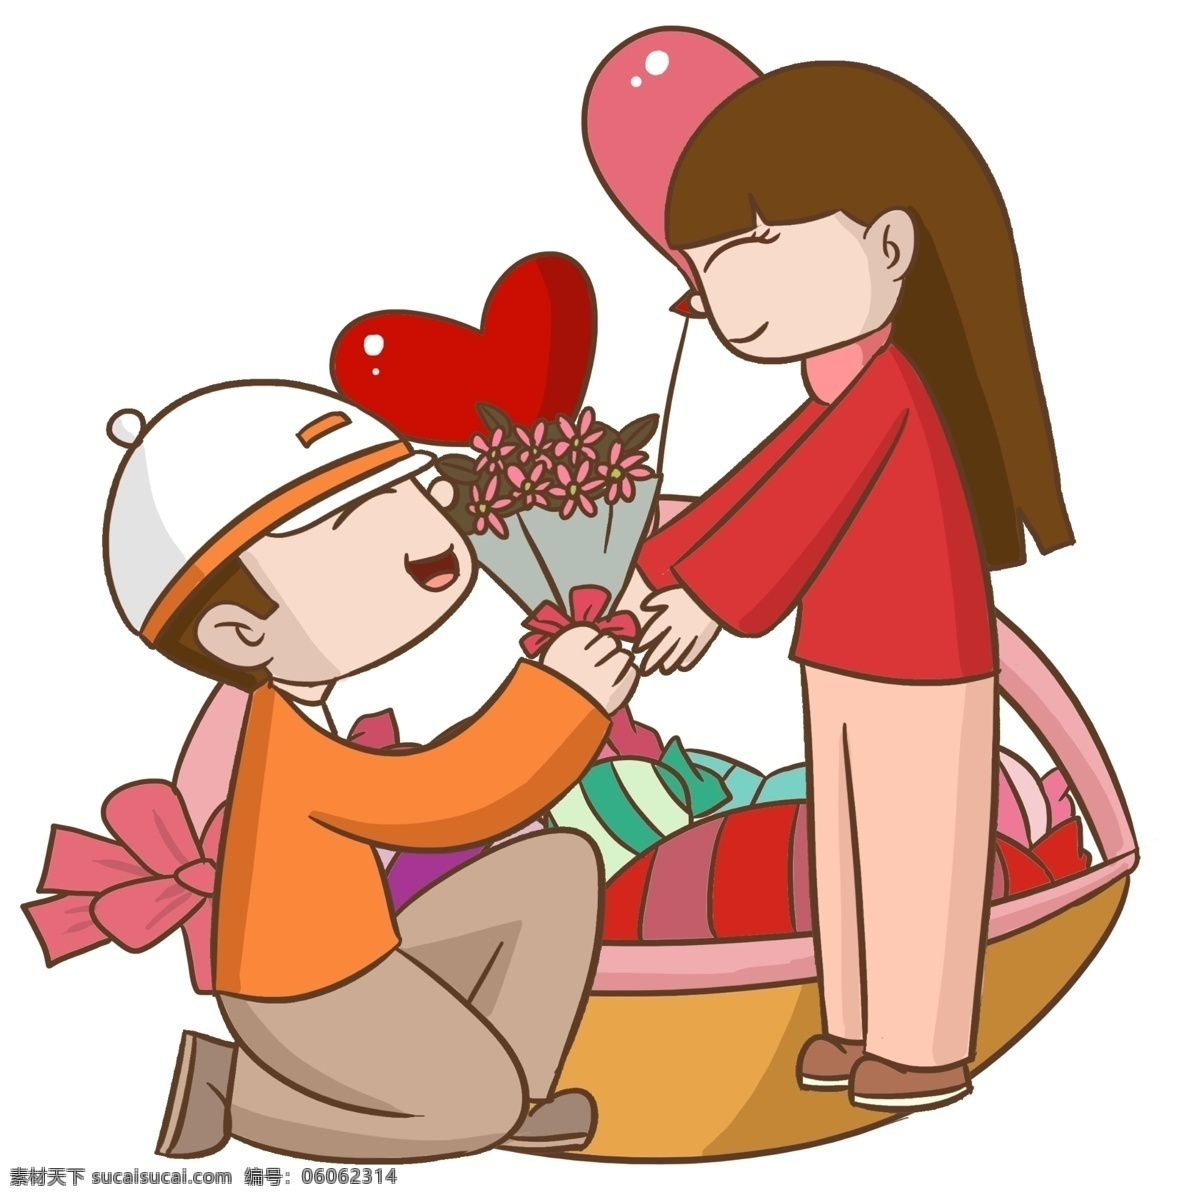 情人节 求婚 情侣 红色的桃心 红色的鲜花 红色的蝴蝶结 漂亮的小女孩 人物 手绘 插画 求婚的小男孩